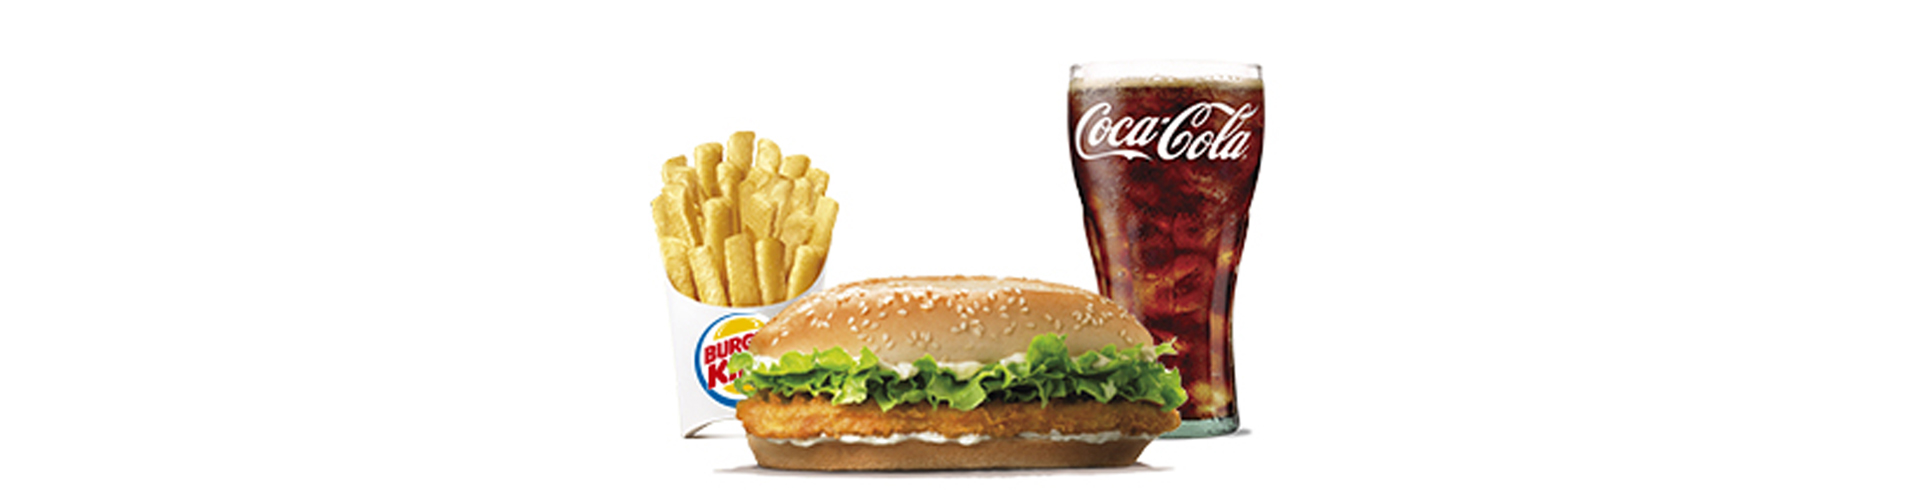 menu-long-chicken-burgerking-40001720-cocacola-aros